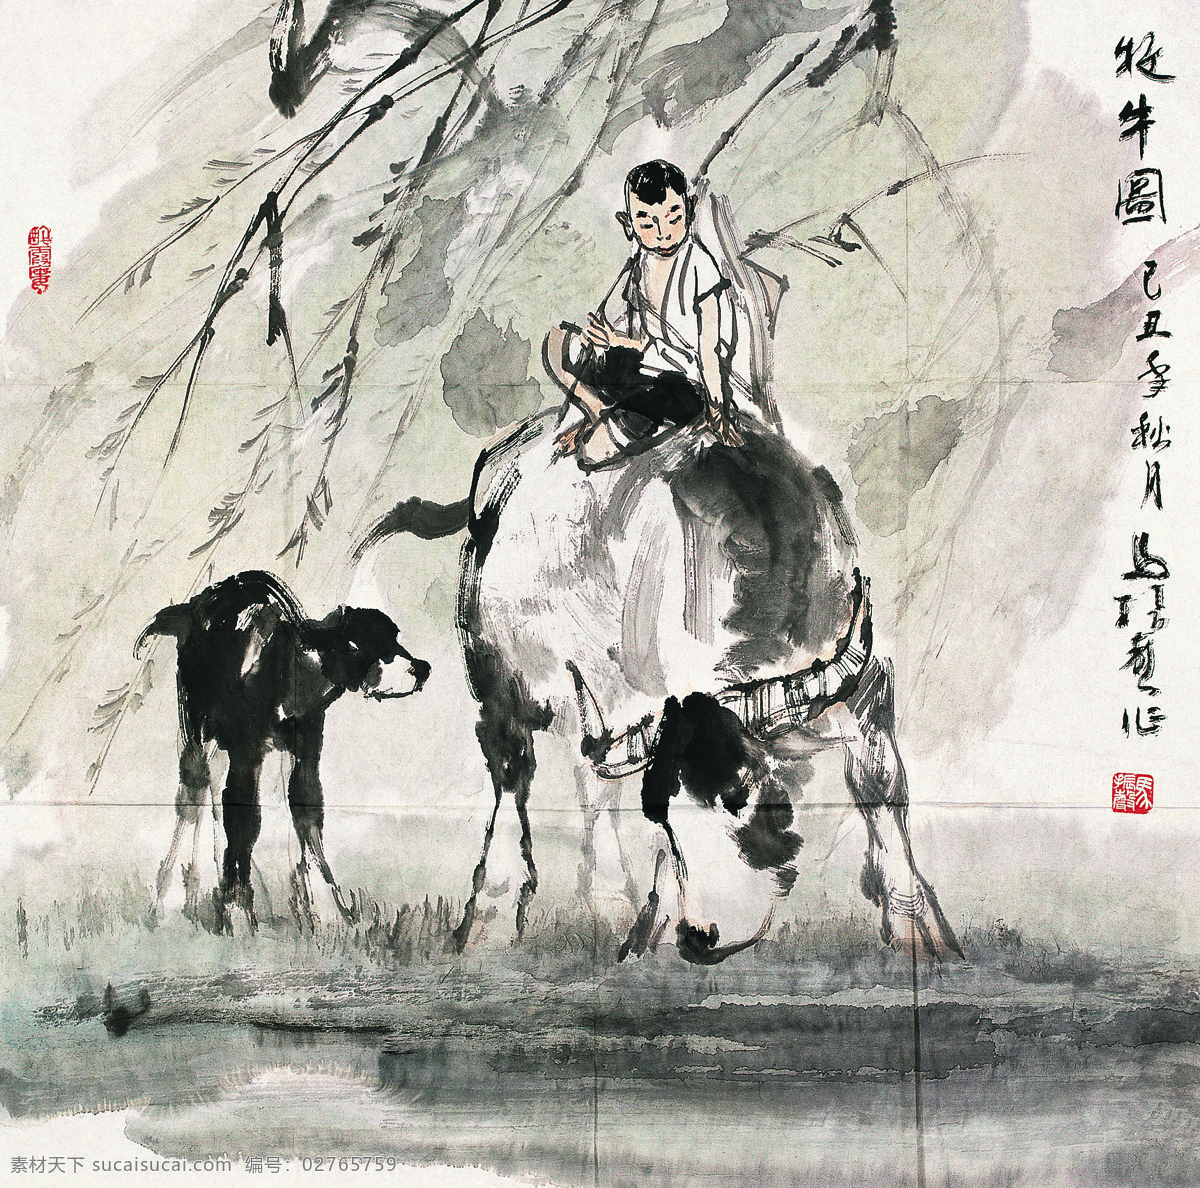 牧牛图 牧童 小牛犊 骑在牛上 放牛 国画方屏 绘画书法 文化艺术